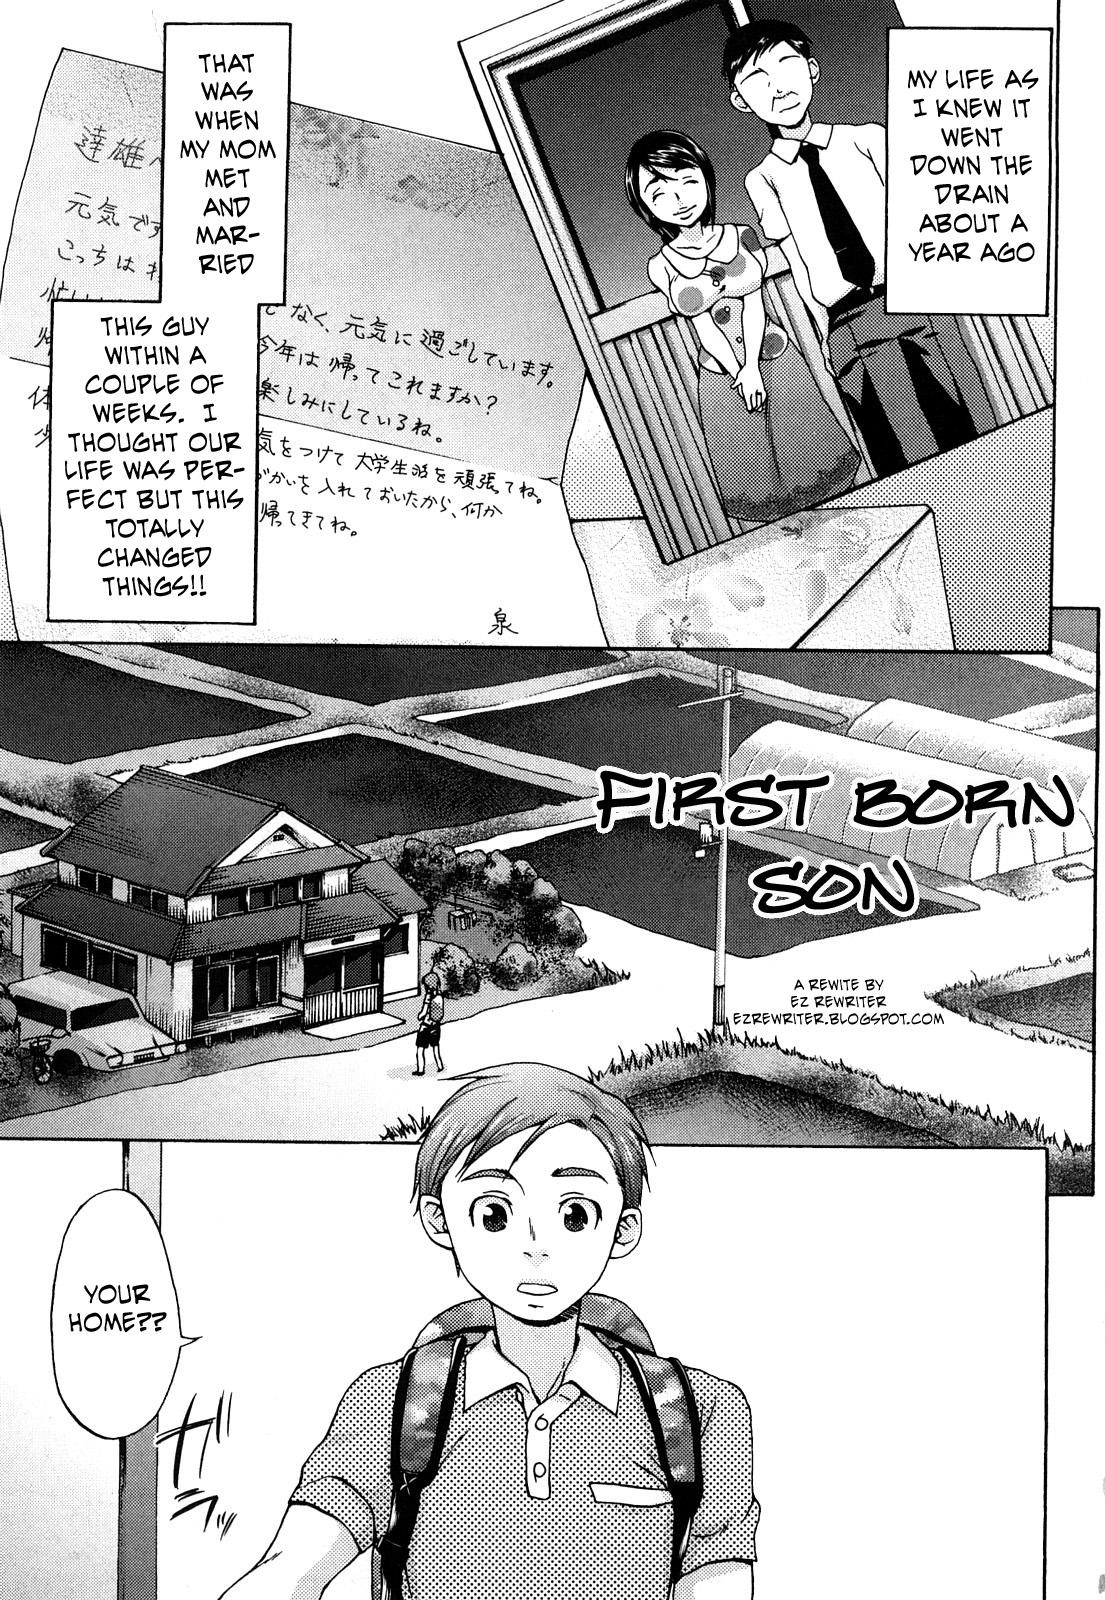 First Born Son 1